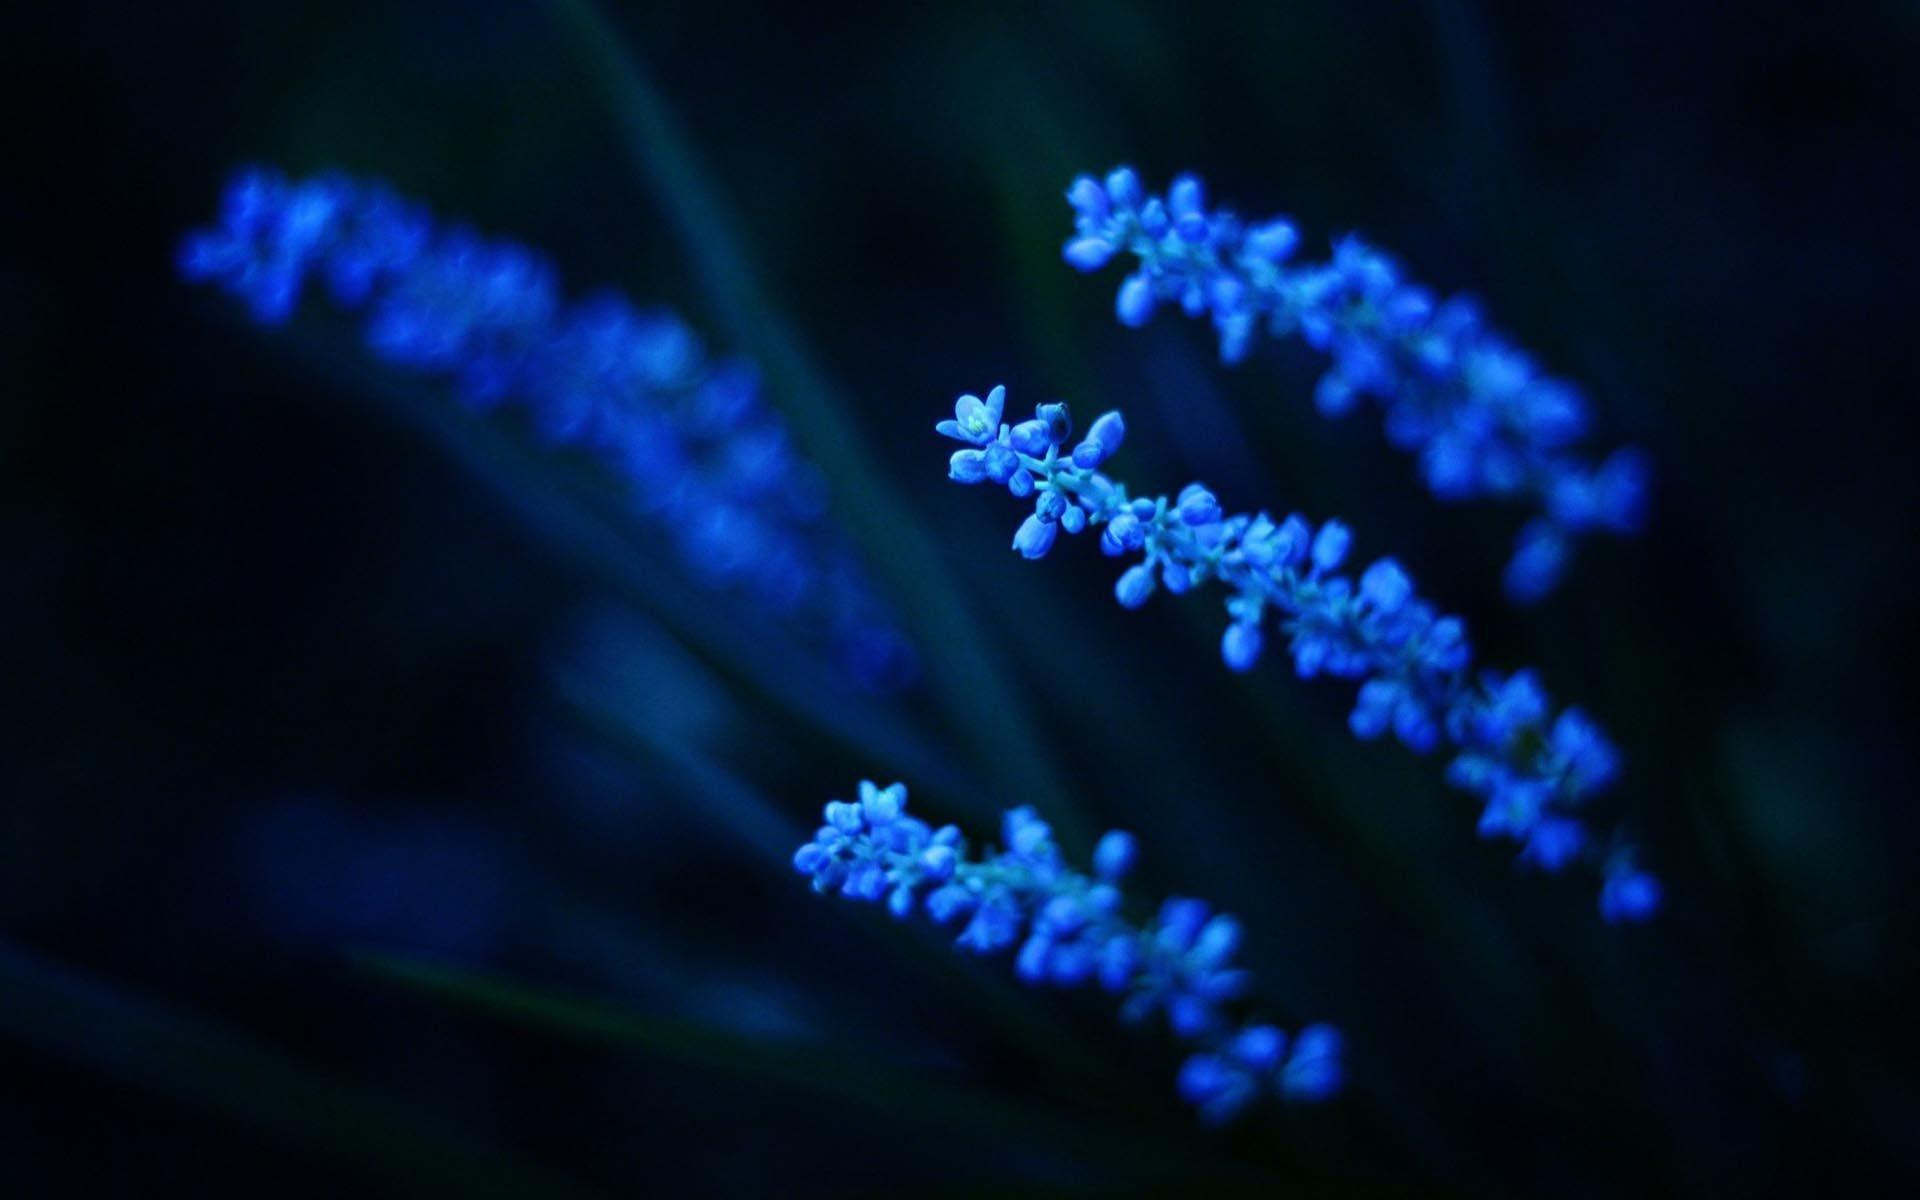 Blue Aesthetic Flower Wallpaper Free Blue Aesthetic Flower Background